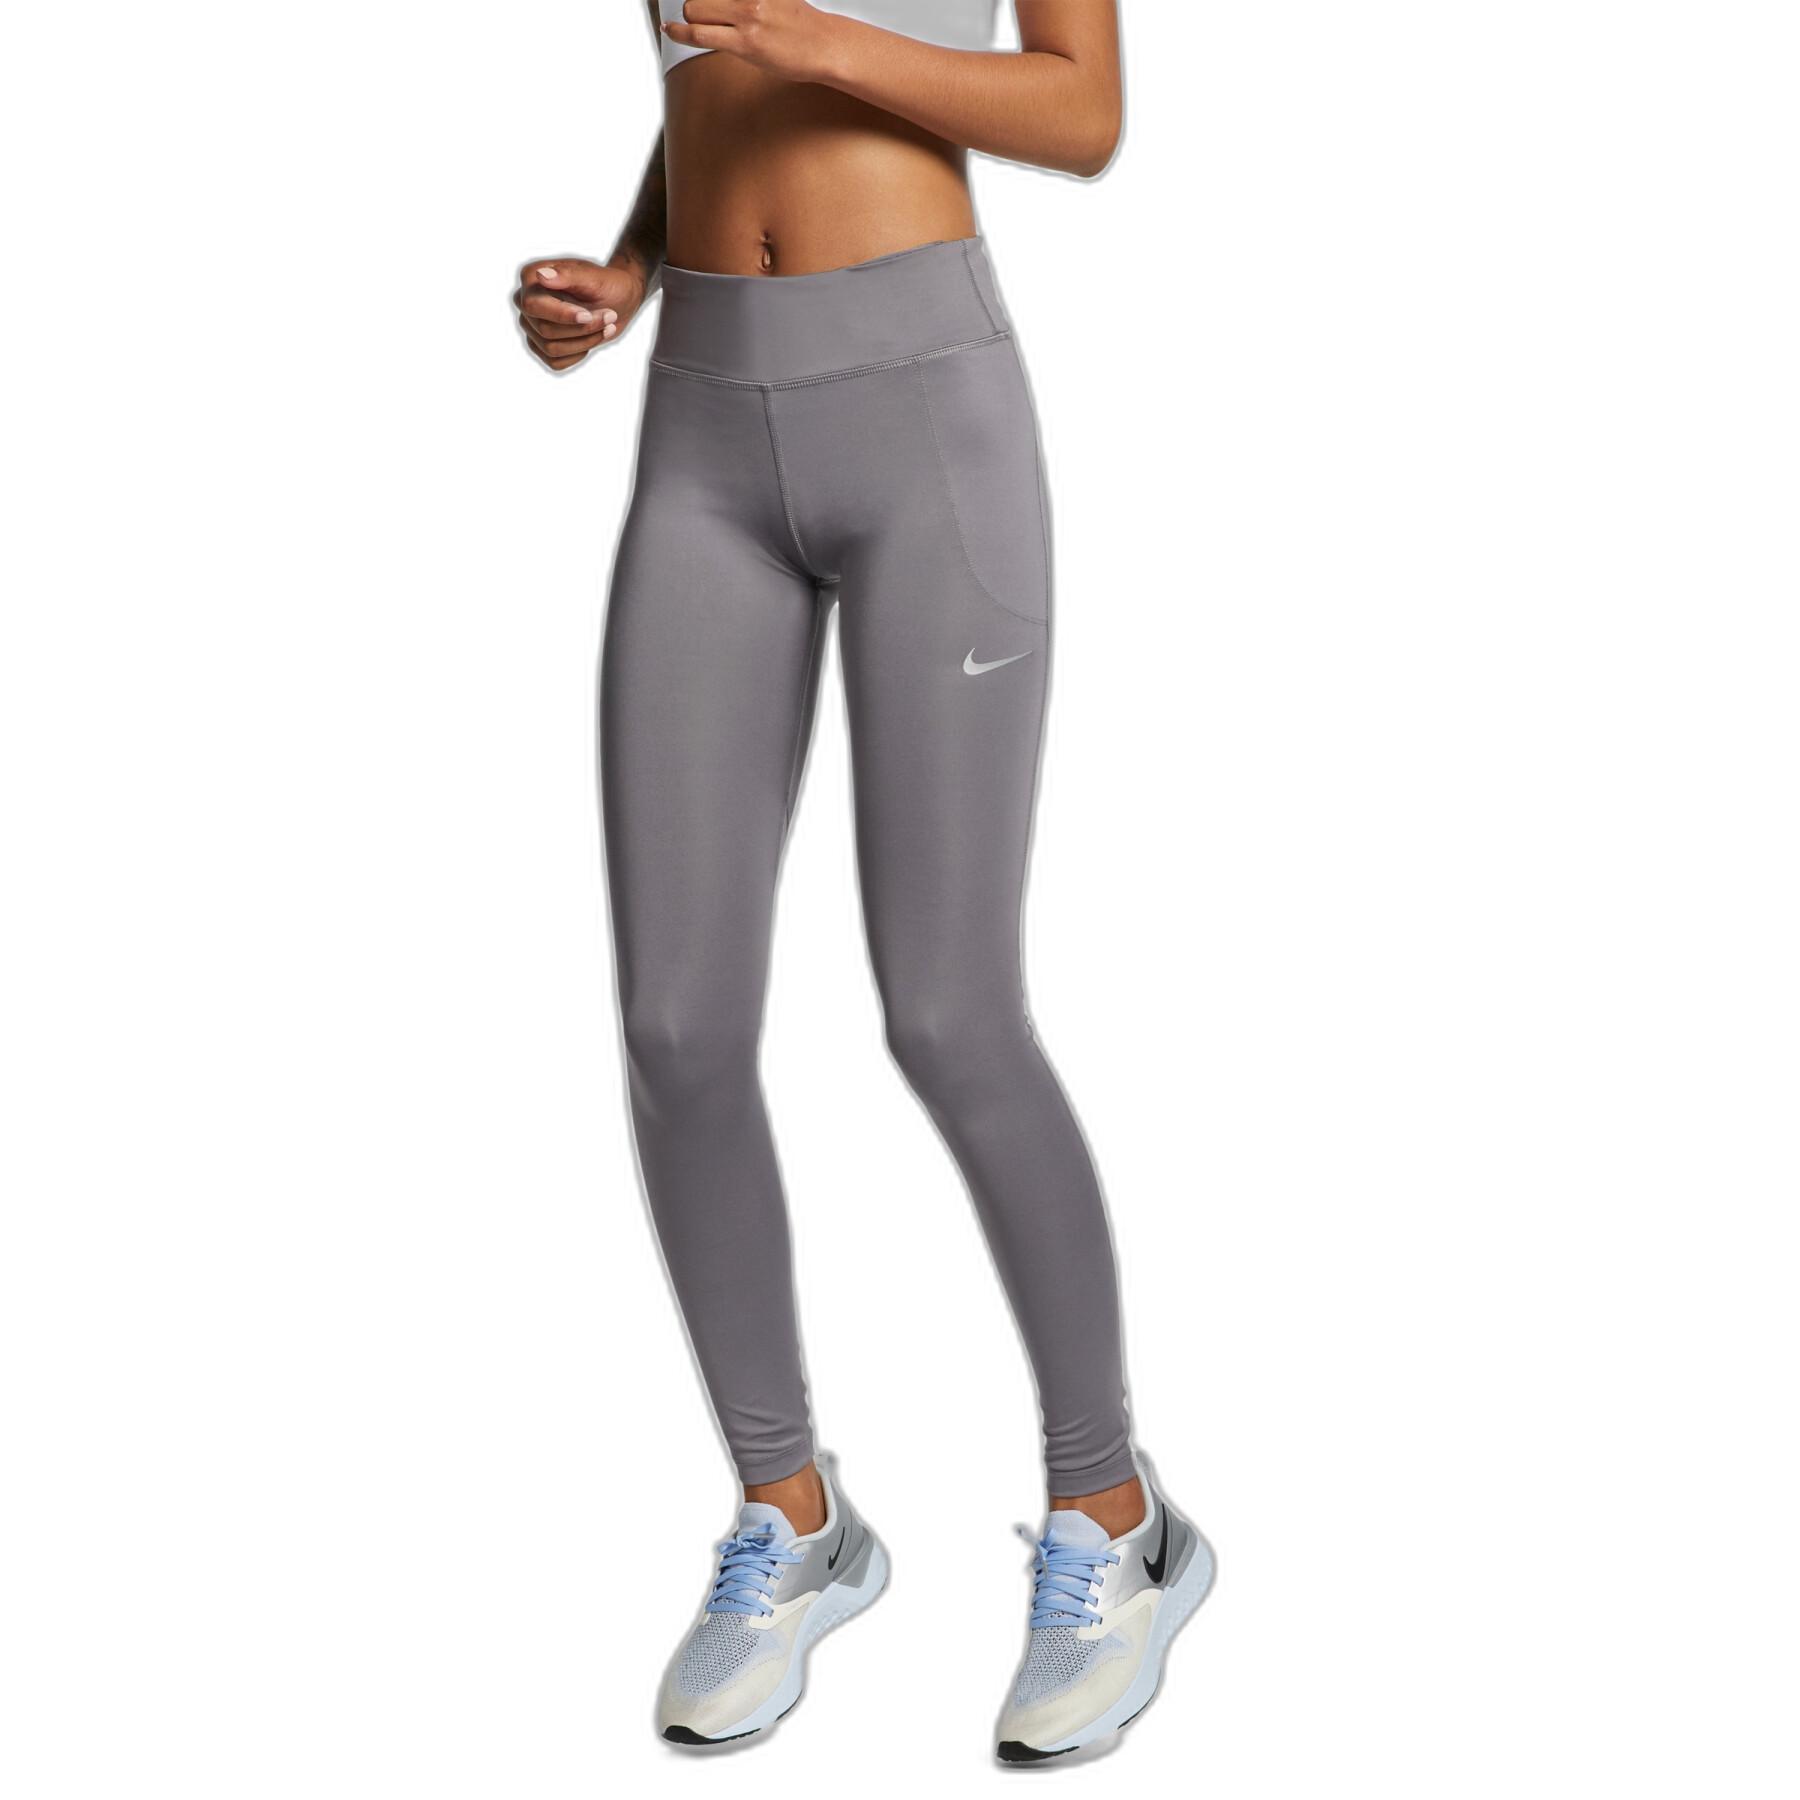 Legging femme Nike Fast - Pantalons et leggings - Textile femme - Running